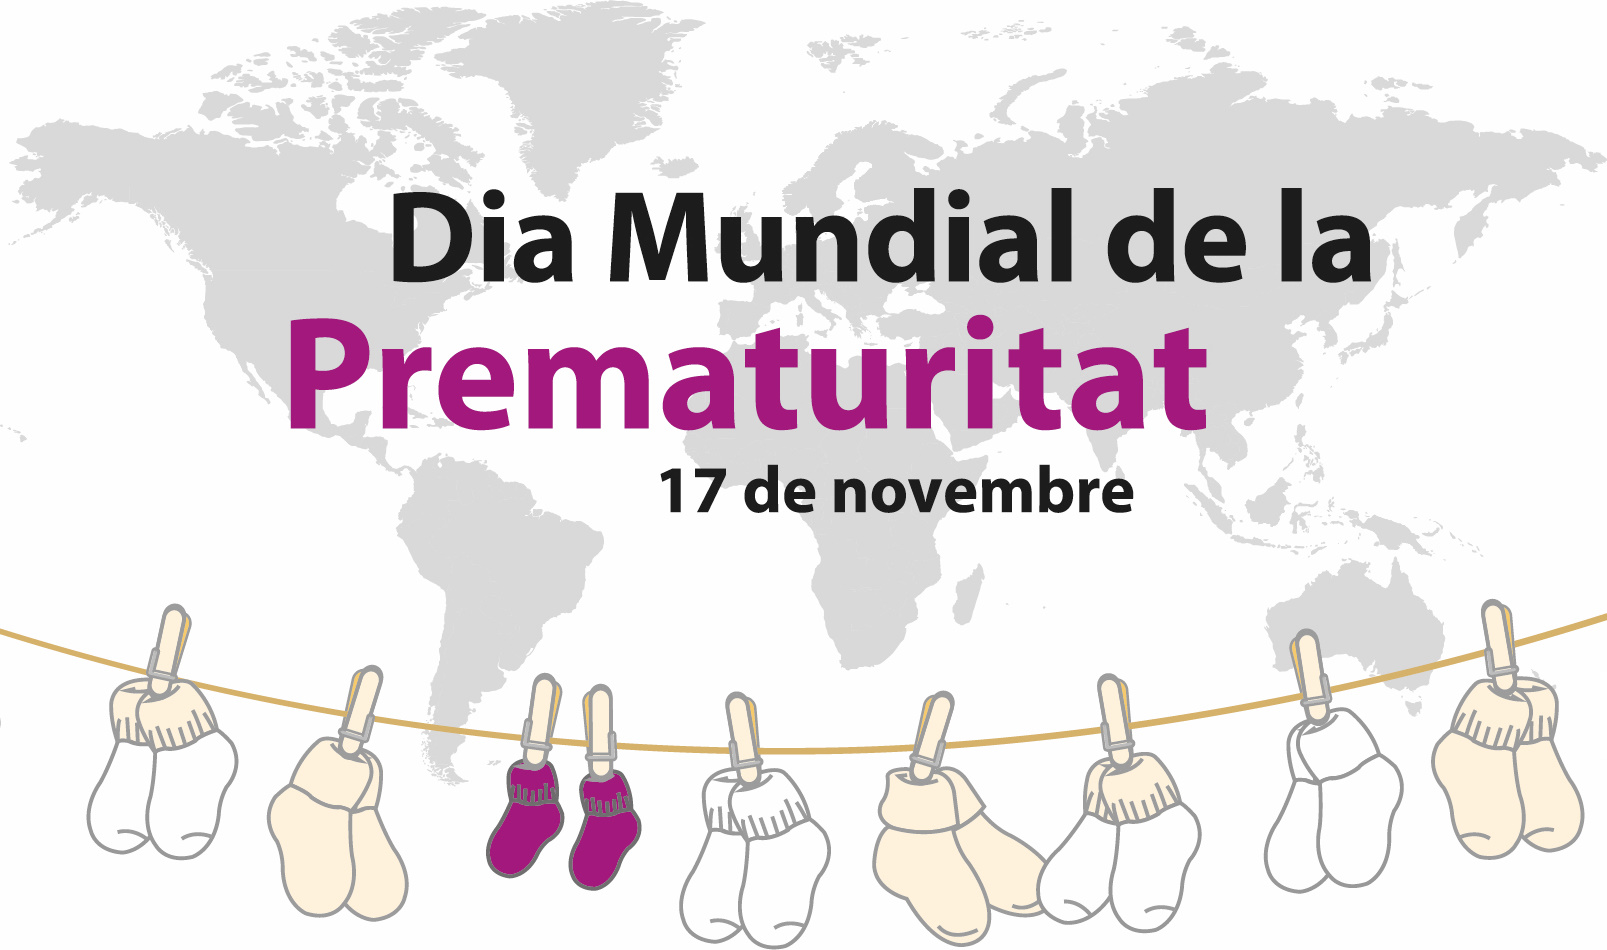 Dia Mundial de la Prematuritat